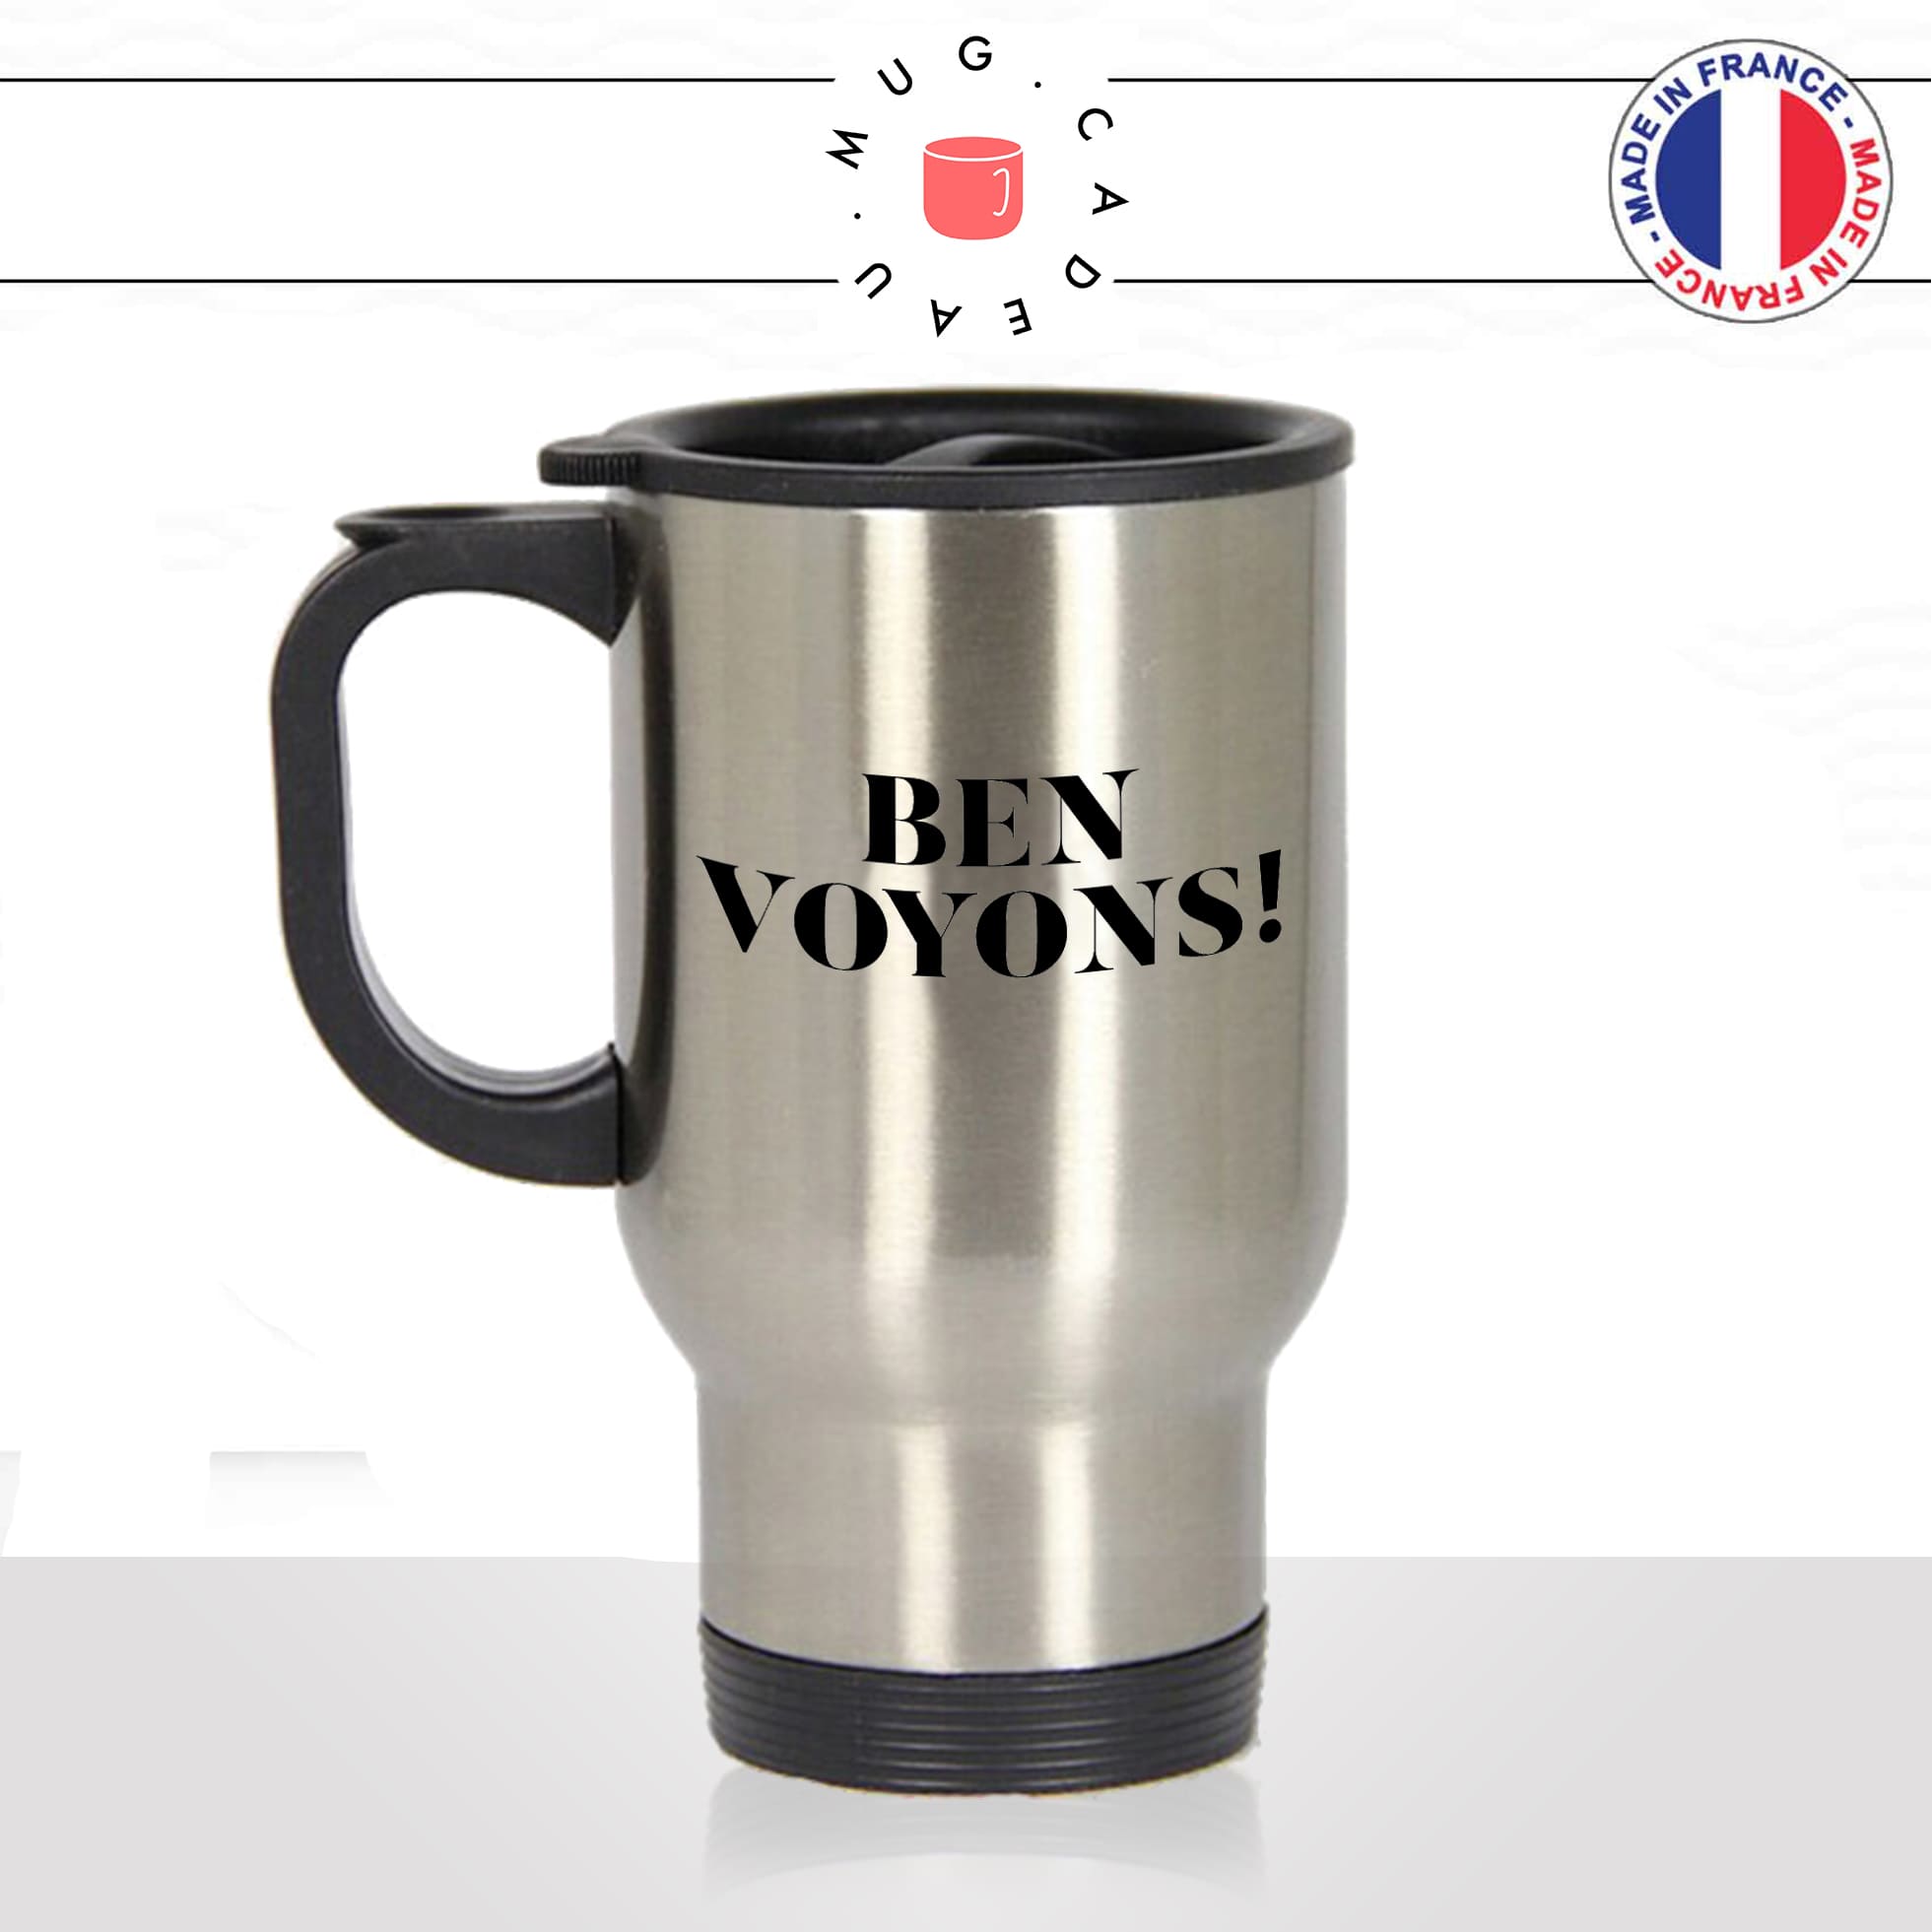 mug-tasse-thermos-isotherme-unique-meme-ben-voyons-eric-zemmour-homme-femme-humour-fun-cool-idée-cadeau-original-personnalisé